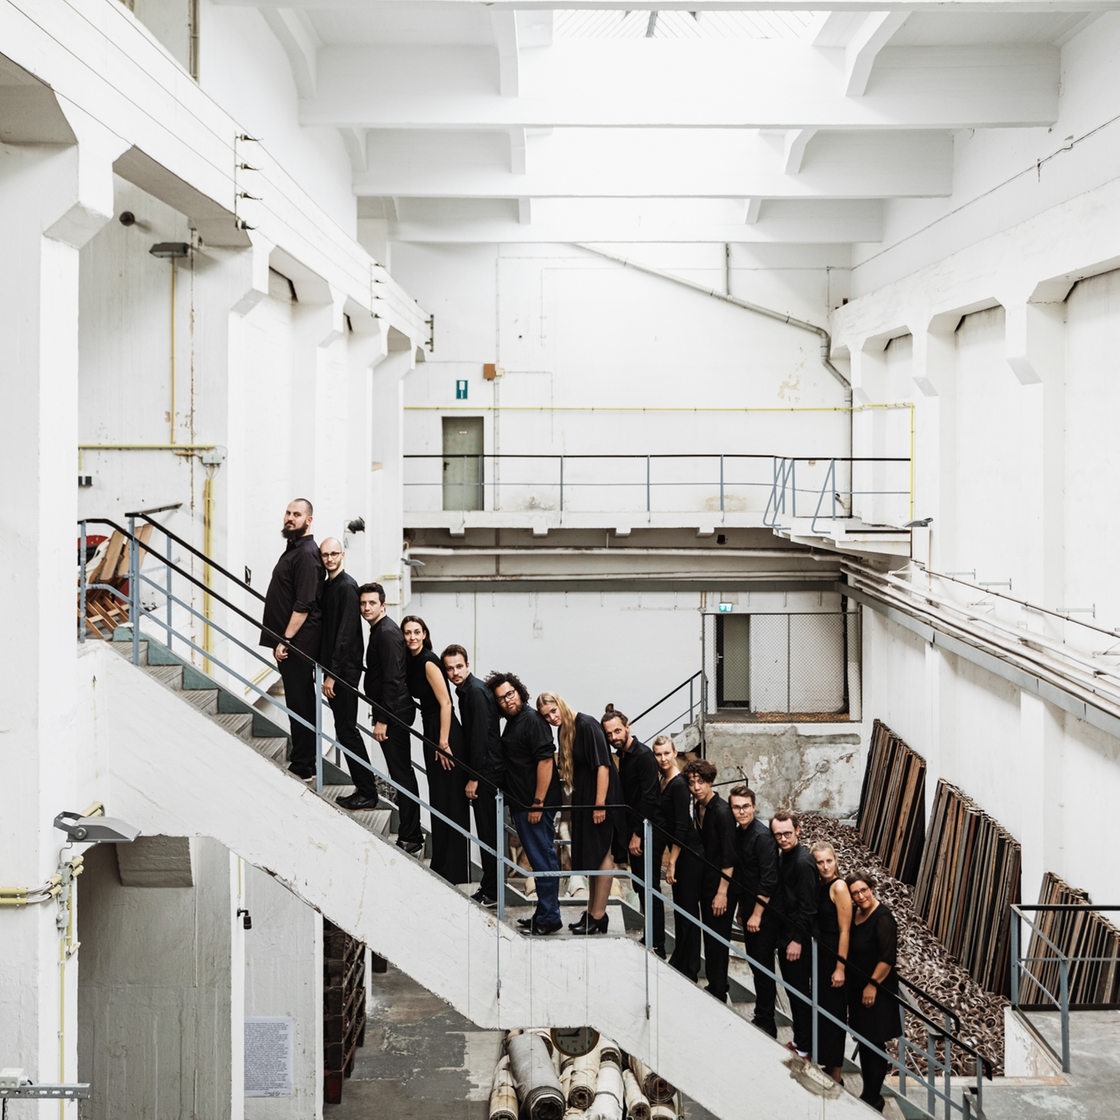 Vierzehn Menschen in schwarzen Kleidung stehen in einer Reihe auf einer Treppe 